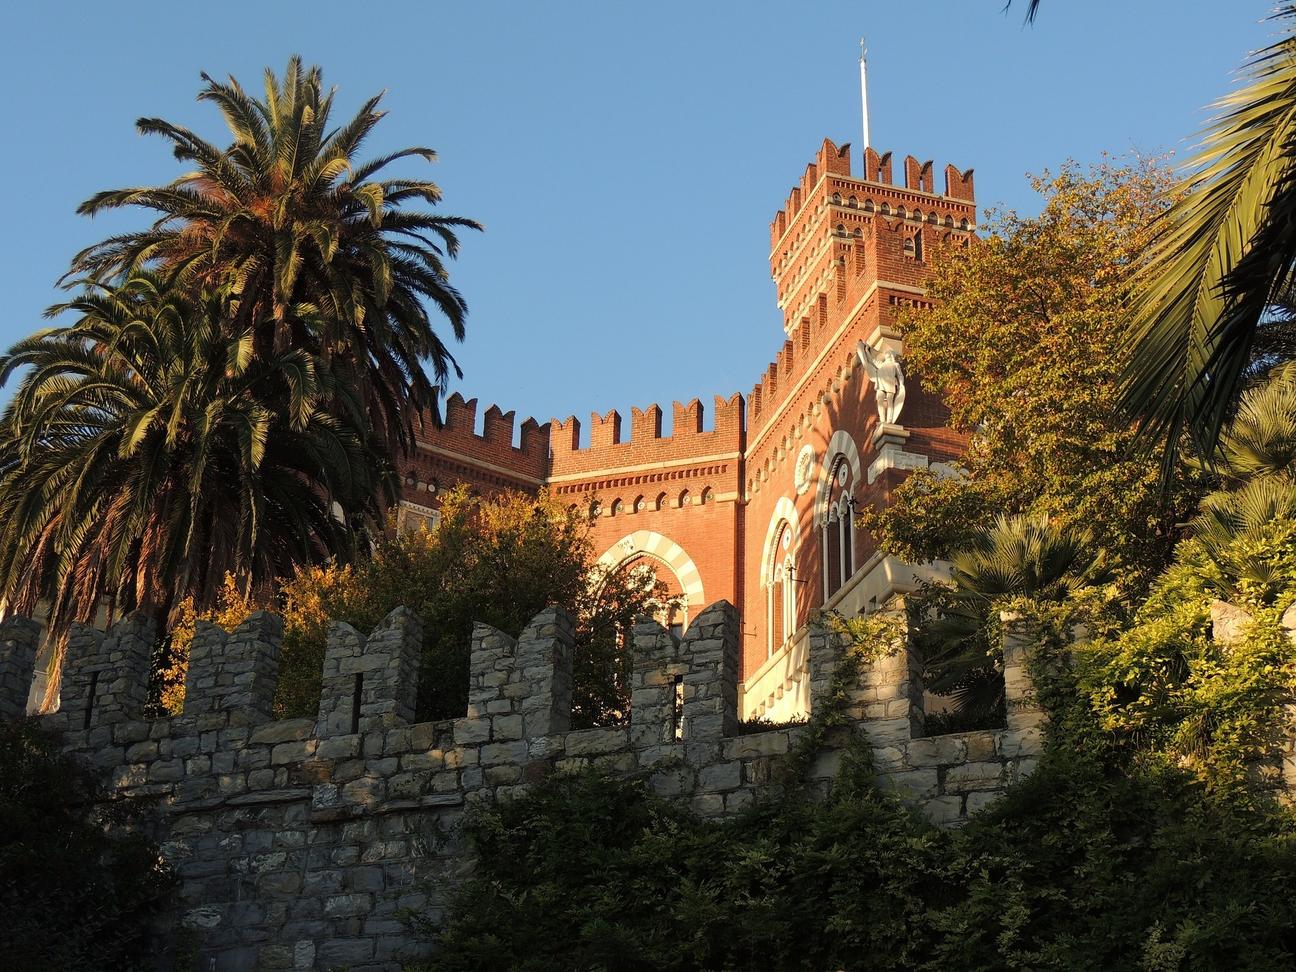 D'Albertis Castle